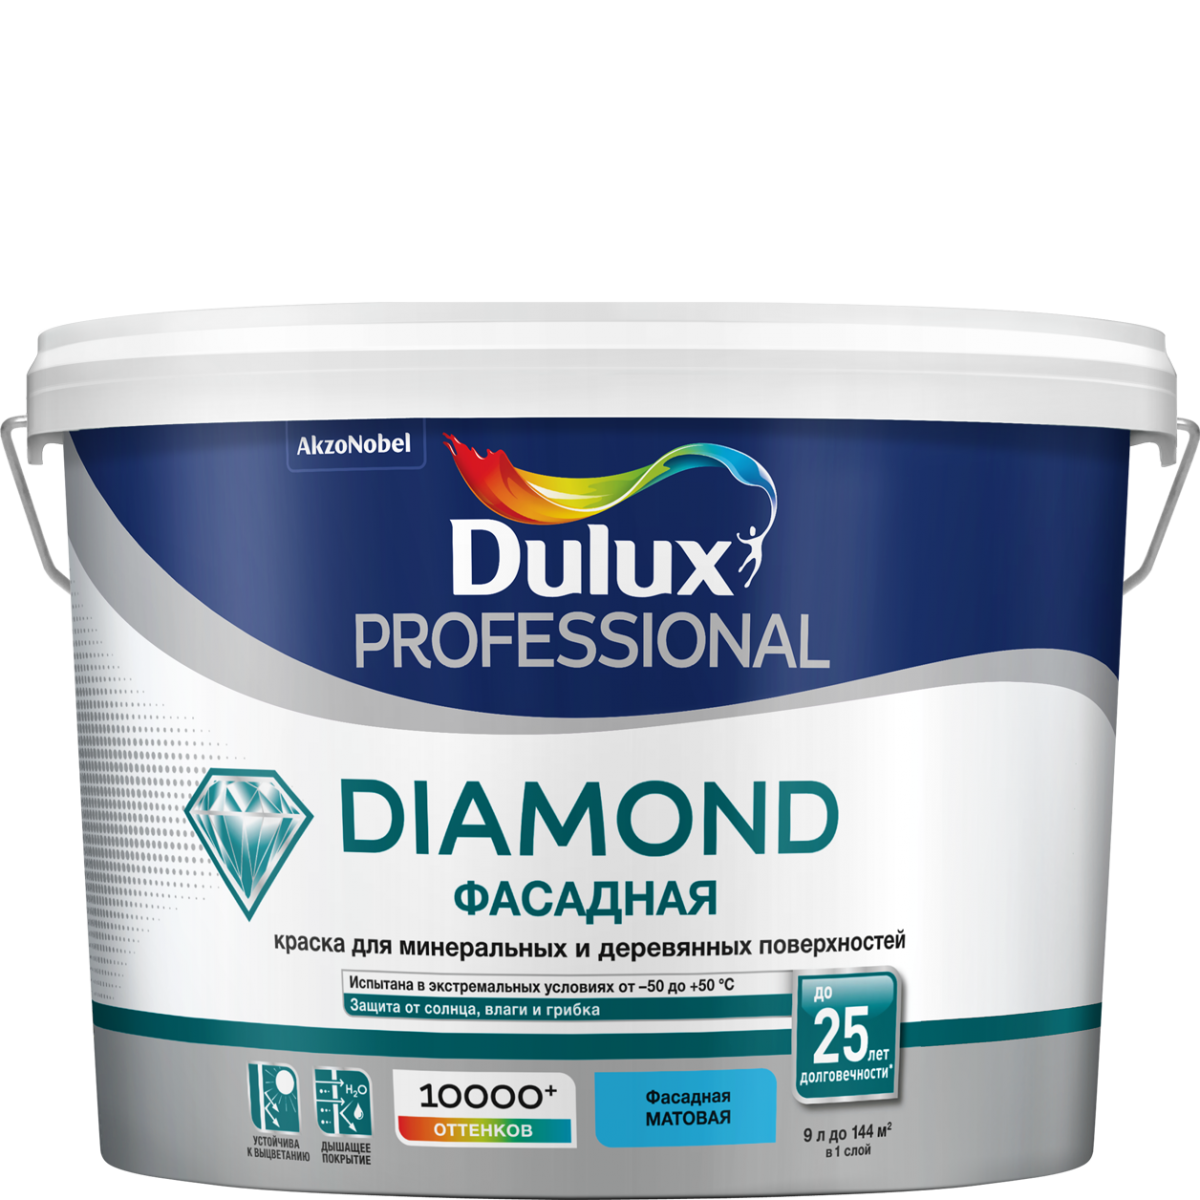 DULUX DIAMOND ФАСАДНАЯ краска для минеральных и деревянных поверхностей